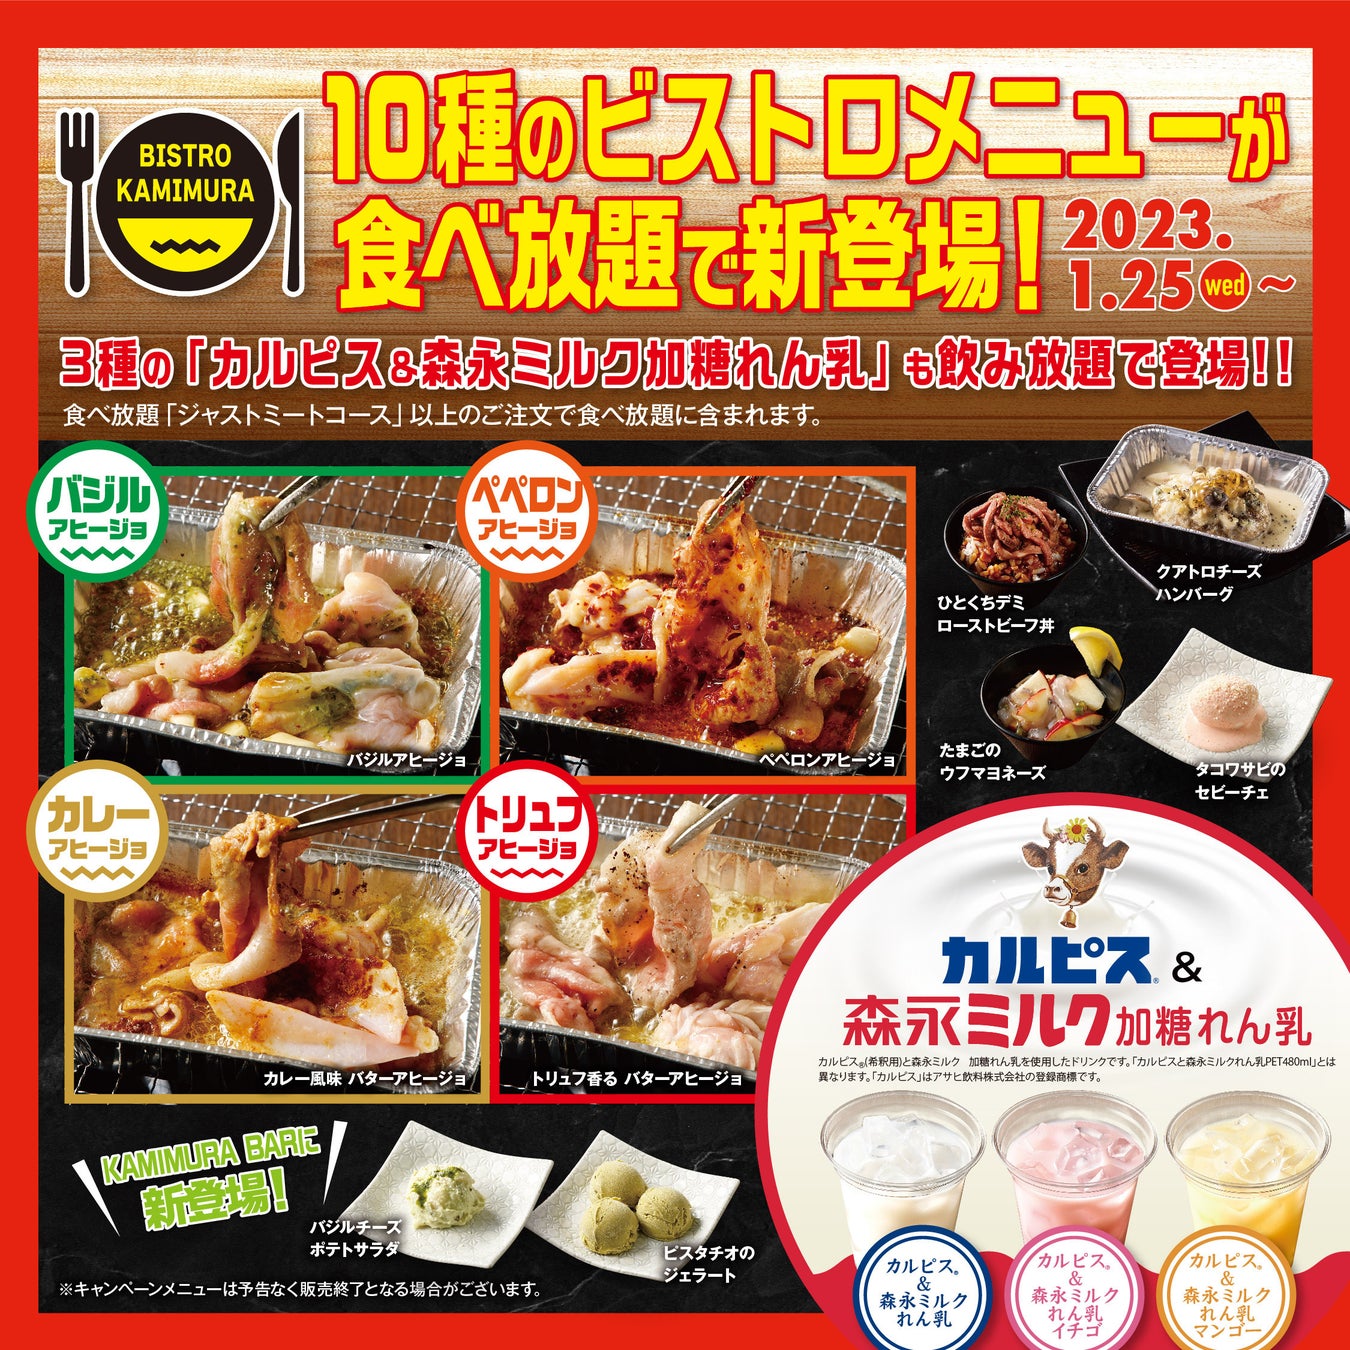 京都に、自然食屋が手がけるビーントゥバー専門店
「プレマルシェ・カカオレート(R)・ラボ」が2/4に開店